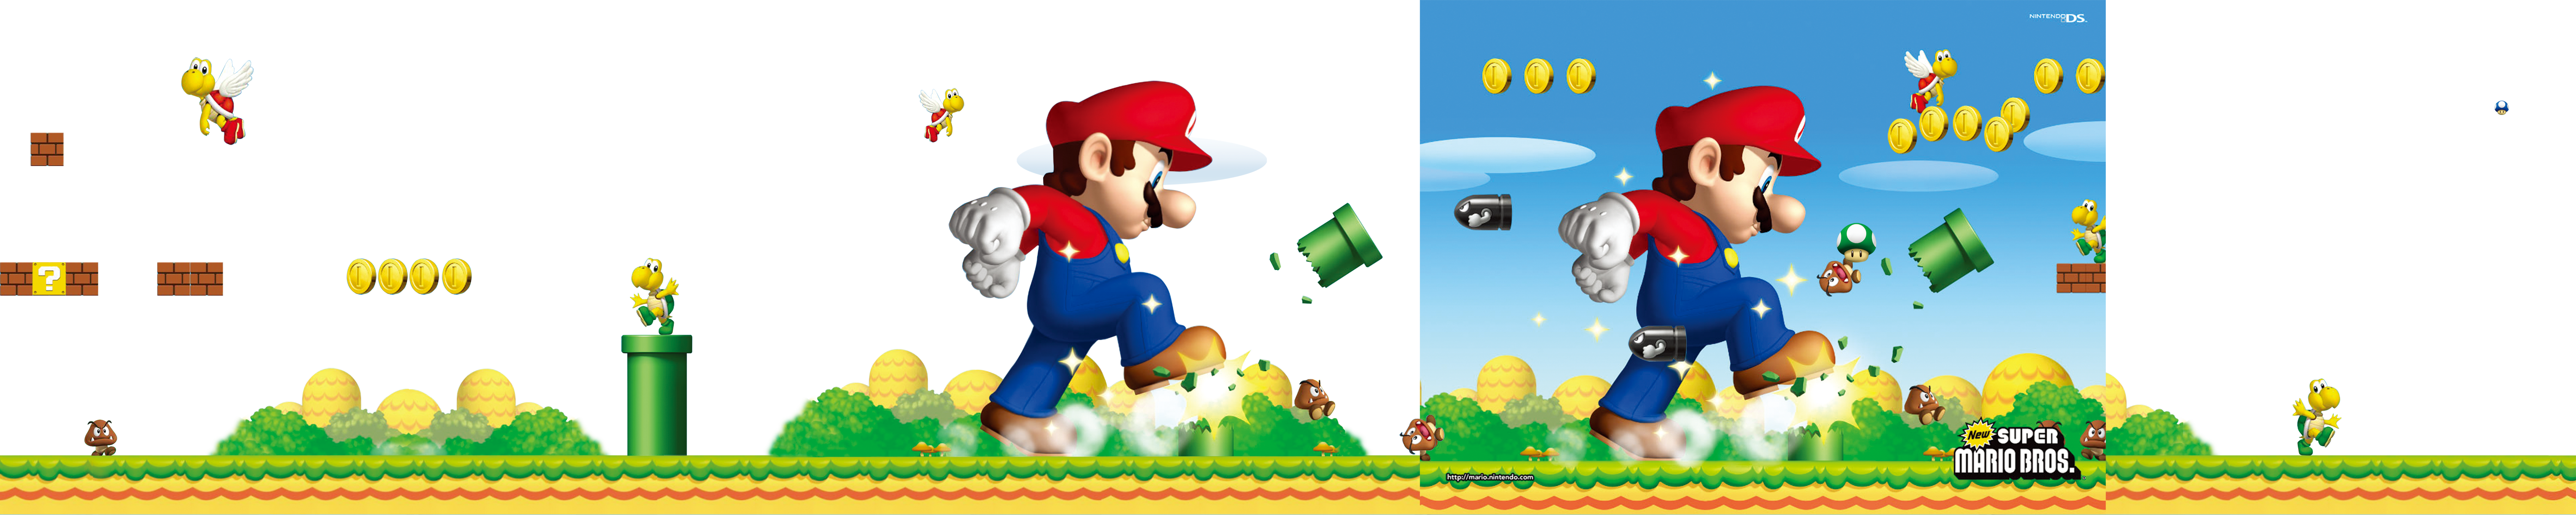 Mario Bros. Cartoon Free HD Image Clipart